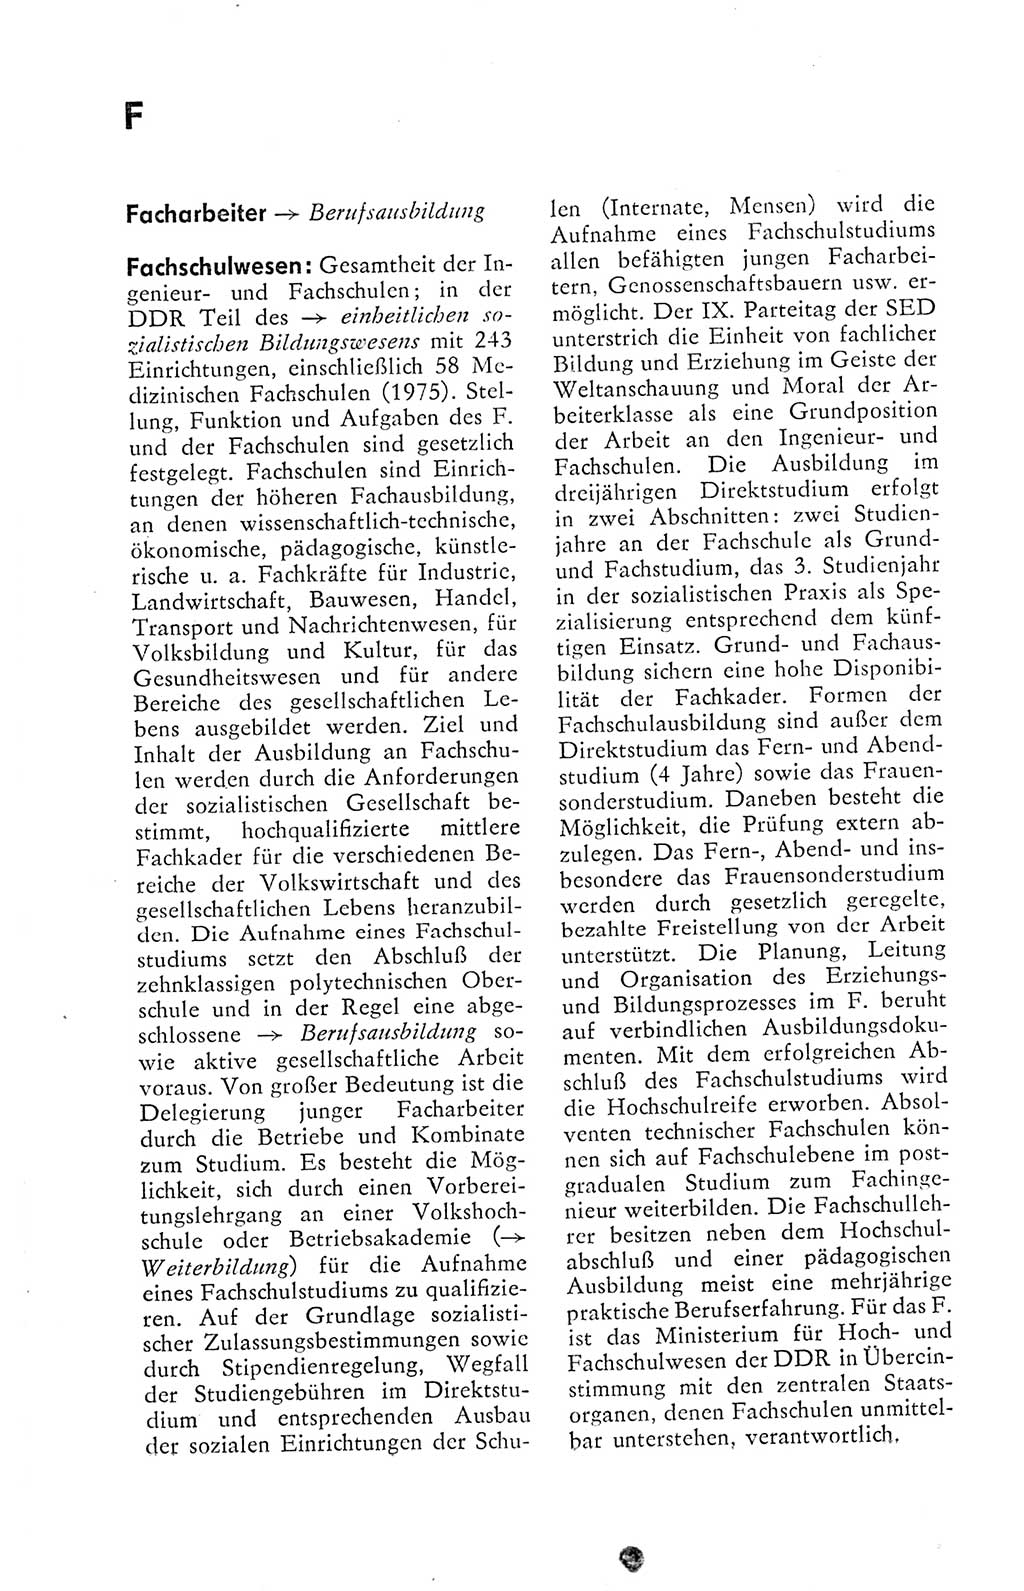 Kleines politisches Wörterbuch [Deutsche Demokratische Republik (DDR)] 1978, Seite 234 (Kl. pol. Wb. DDR 1978, S. 234)